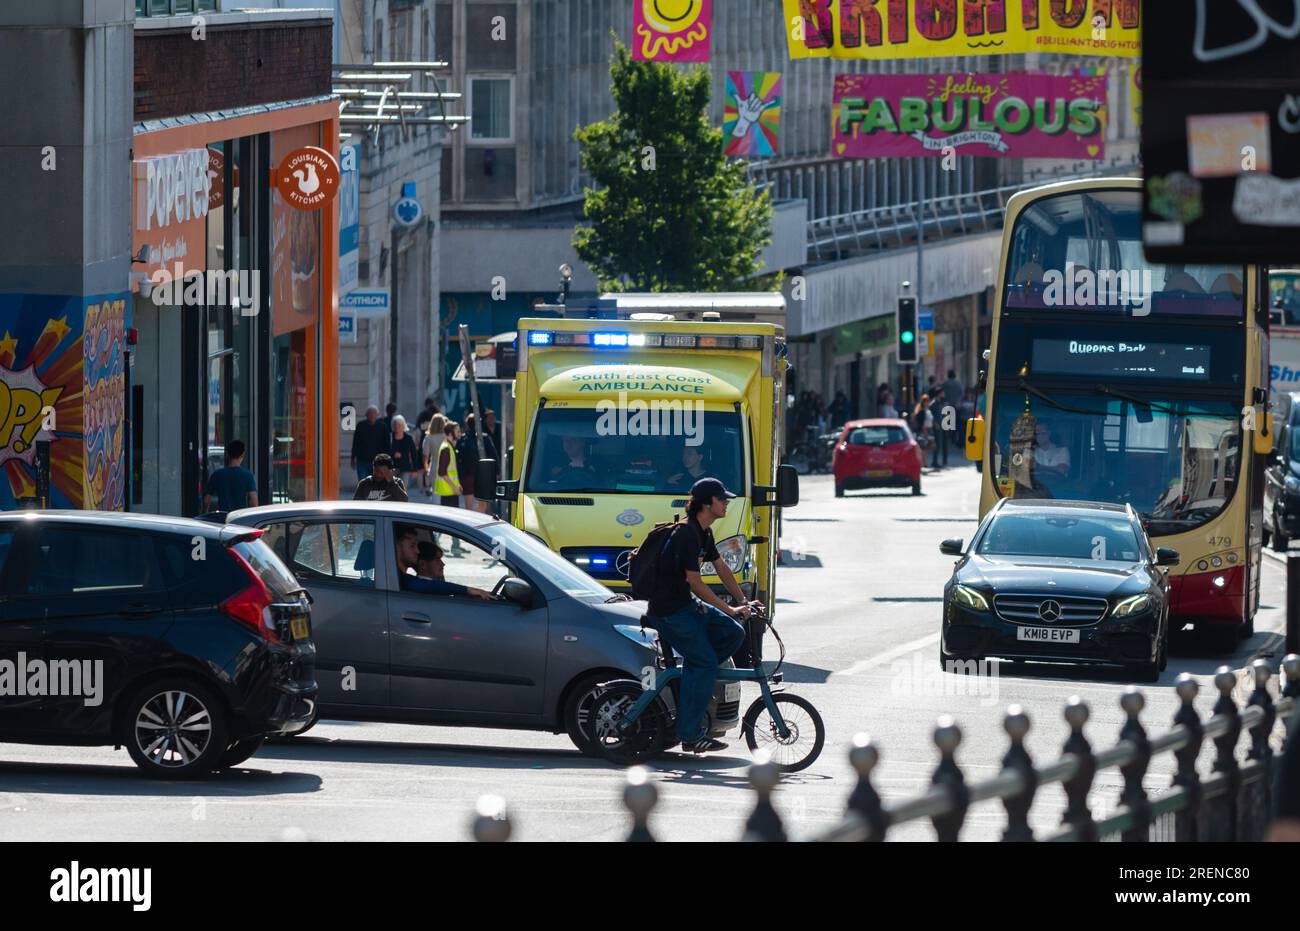 Ambulance d'urgence du NHS dans la circulation dans une ville animée, avec des lumières bleues clignotantes, se rendant à une urgence à Brighton & Hove, Angleterre, Royaume-Uni. Banque D'Images